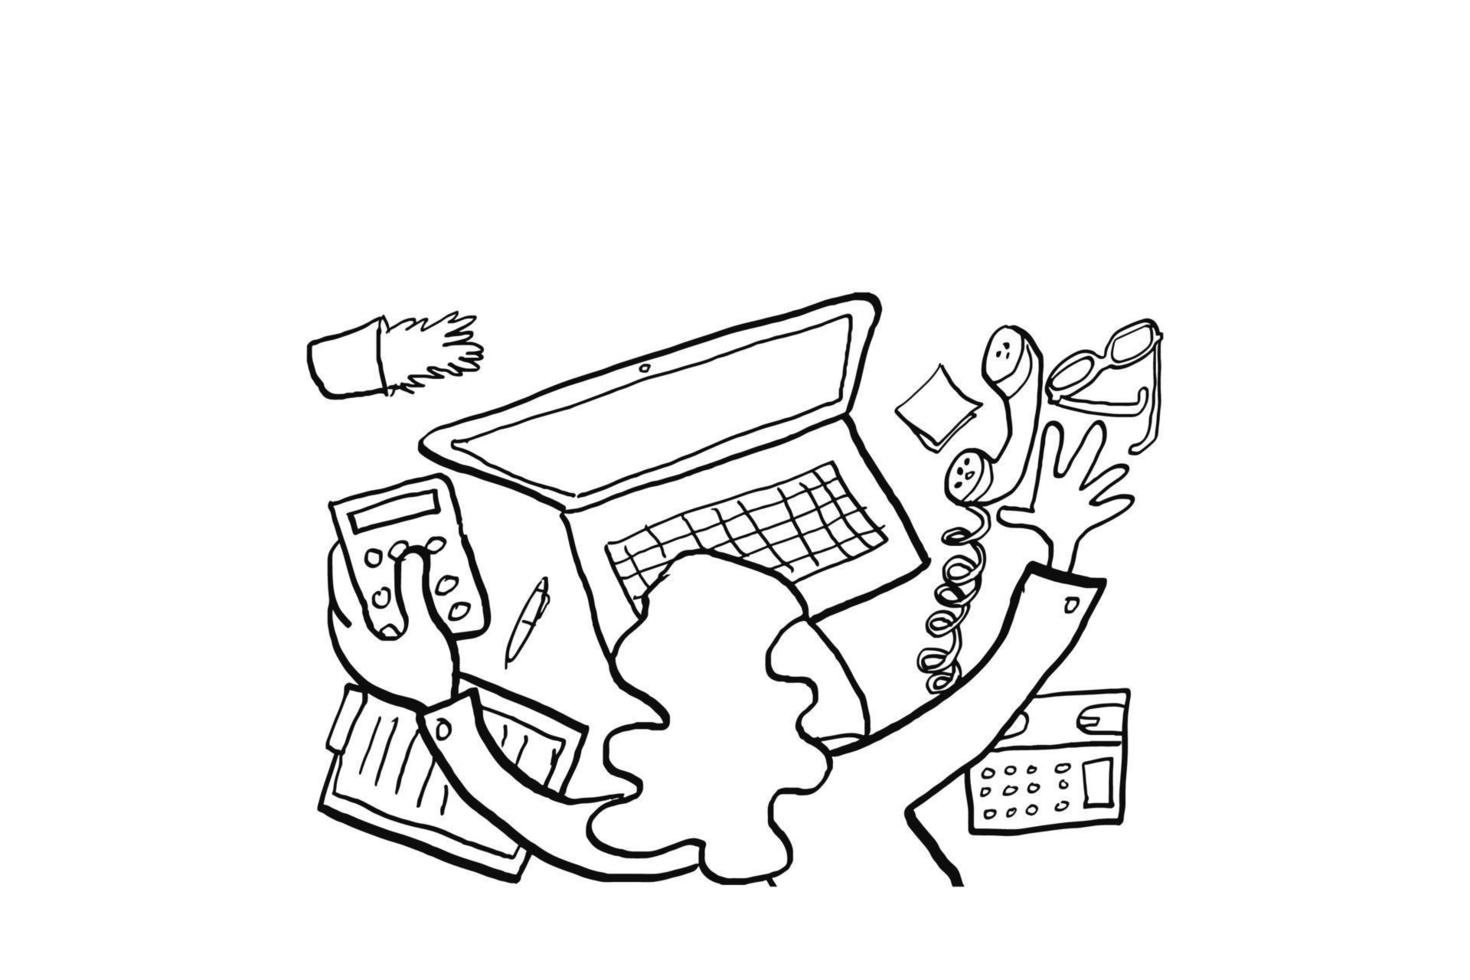 affärskvinna utmattad med redovisningsarbete. begreppet stress på kontoret. tecknad vektor illustration design